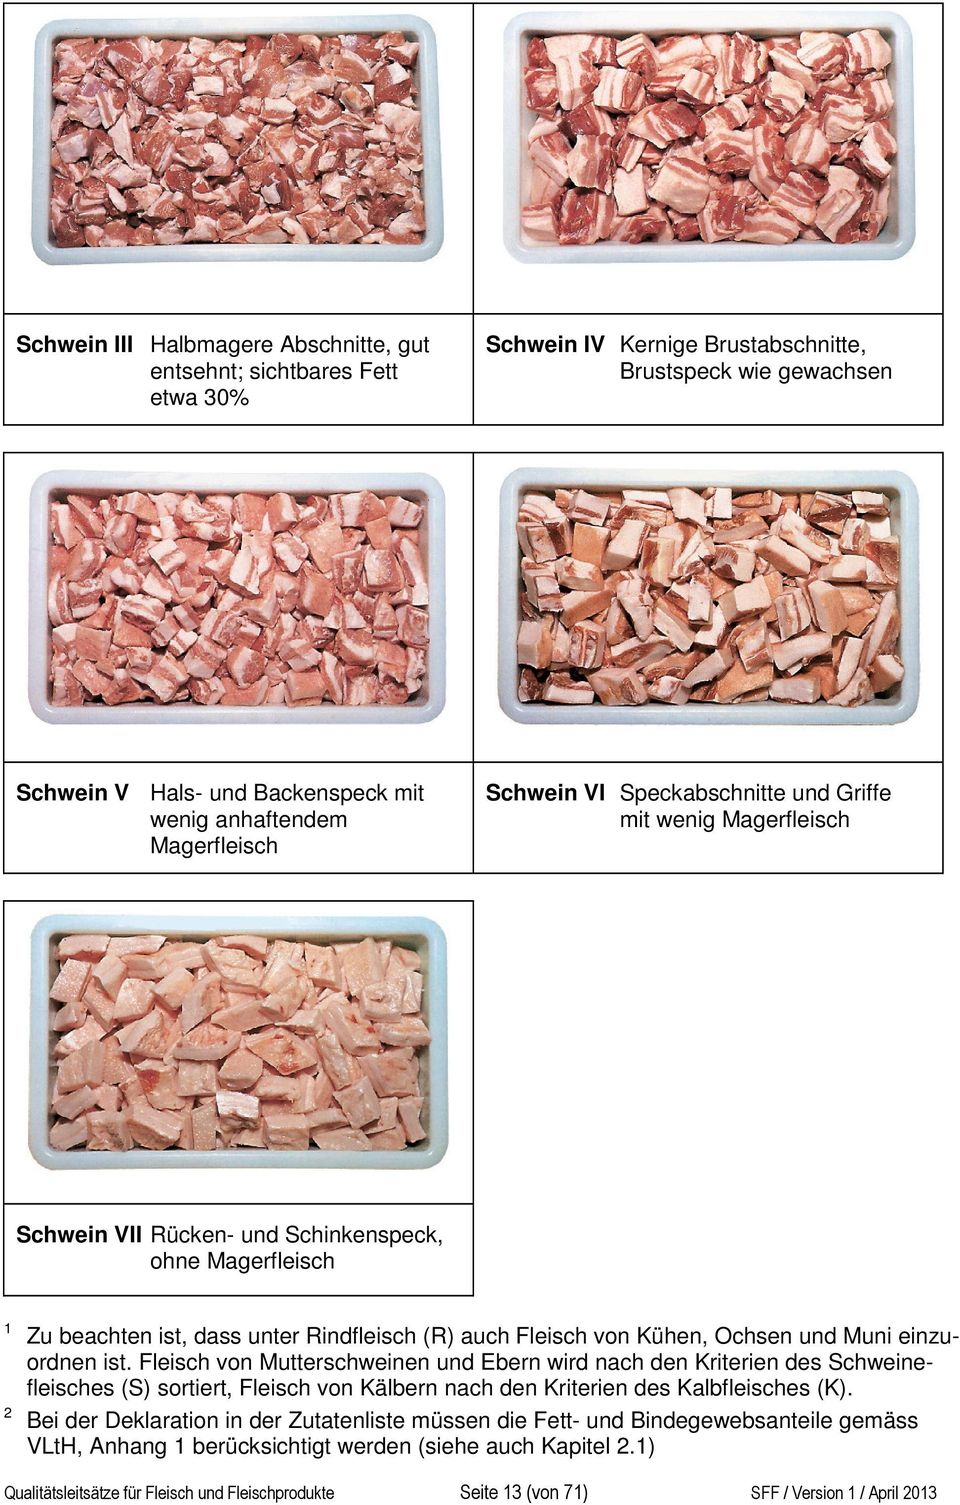 Kühen, Ochsen und Muni einzuordnen ist. Fleisch von Mutterschweinen und Ebern wird nach den Kriterien des Schweinefleisches (S) sortiert, Fleisch von Kälbern nach den Kriterien des Kalbfleisches (K).